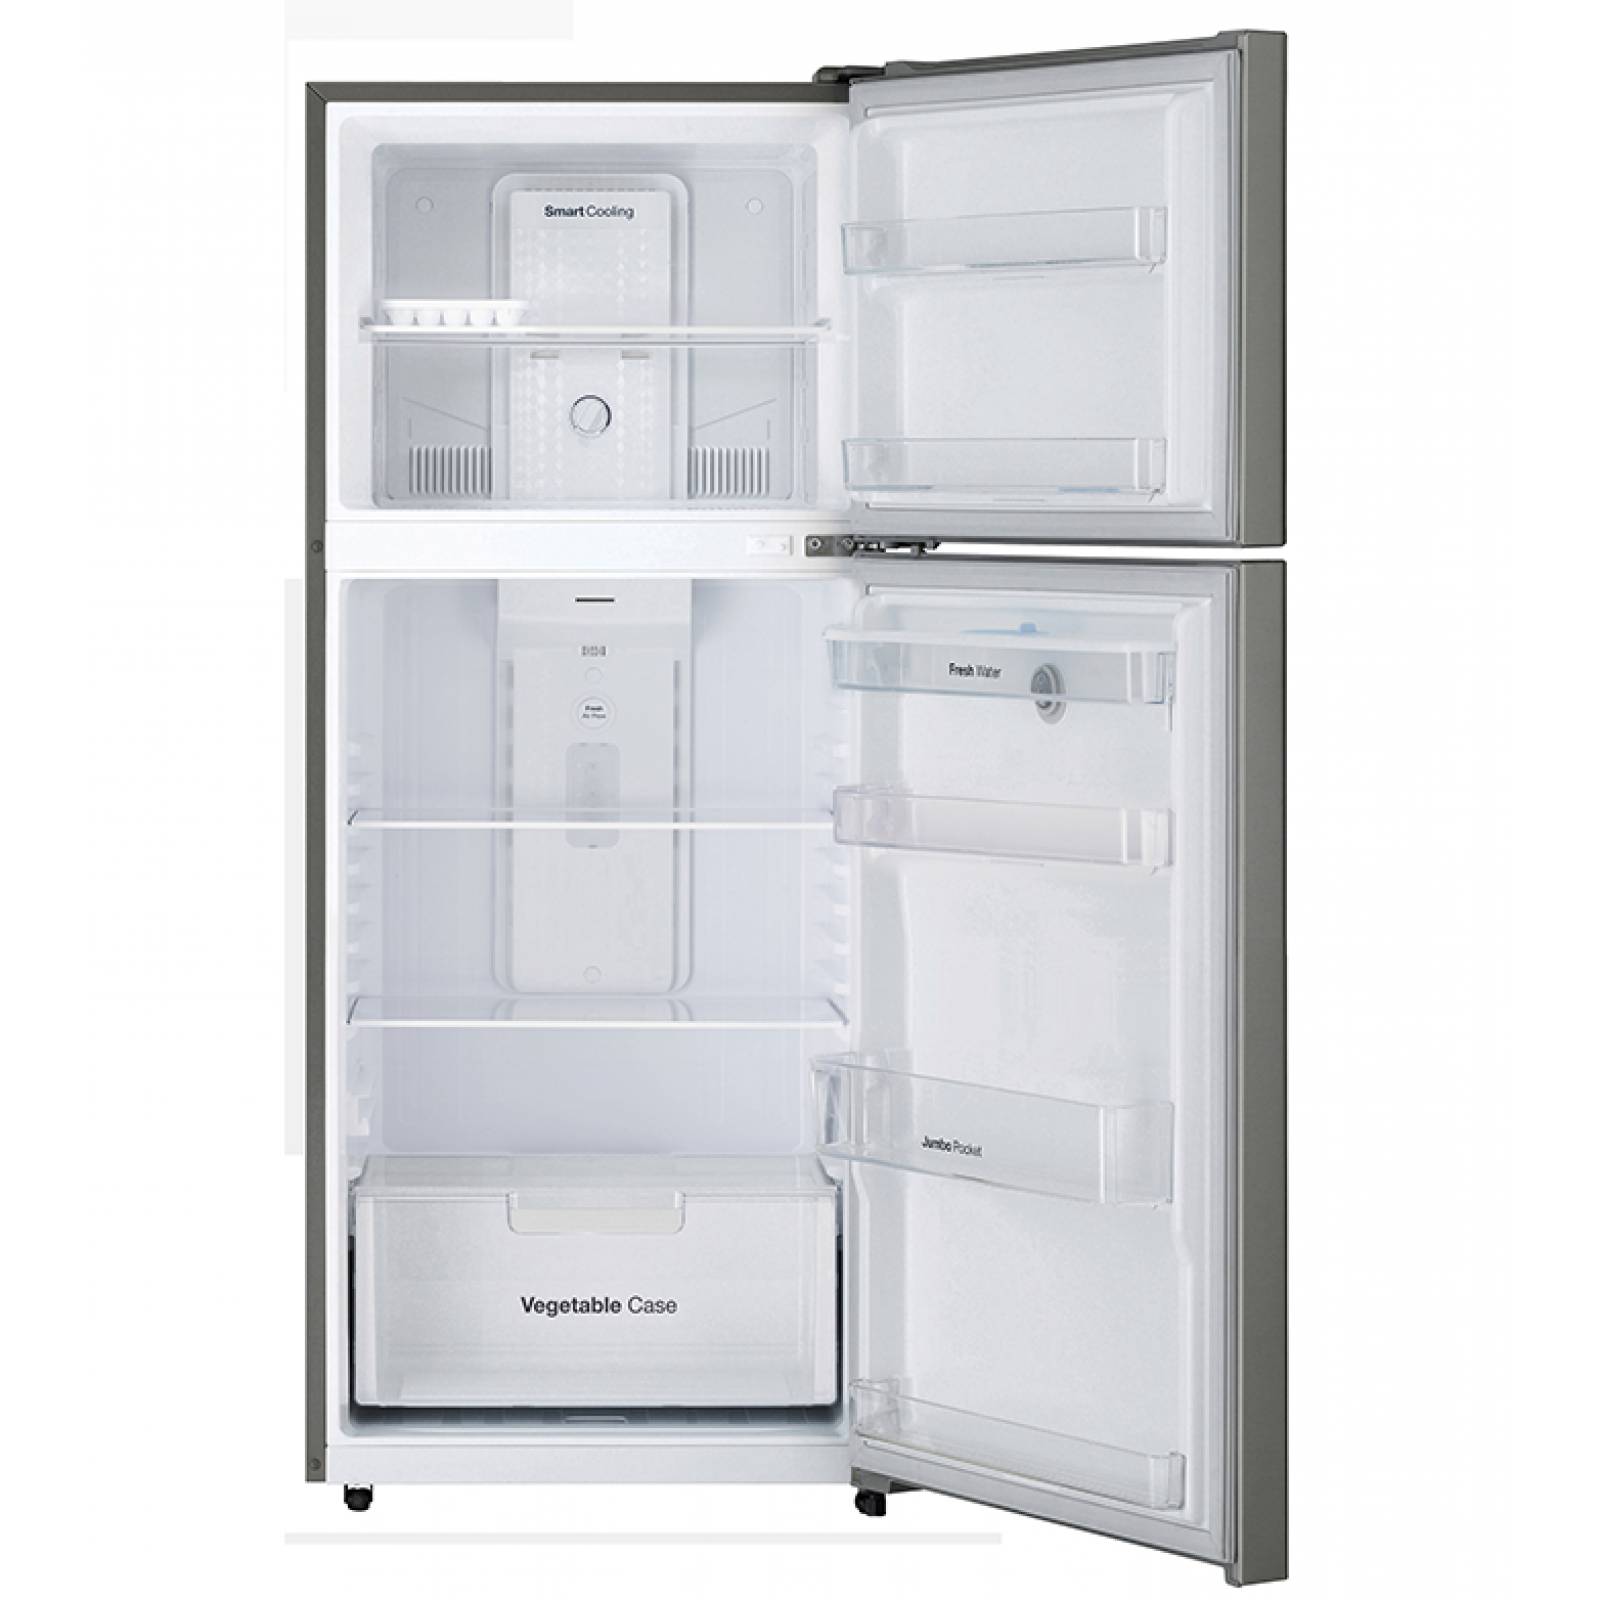 Refrigerador 14 Pies Daewoo con Despachador Silver